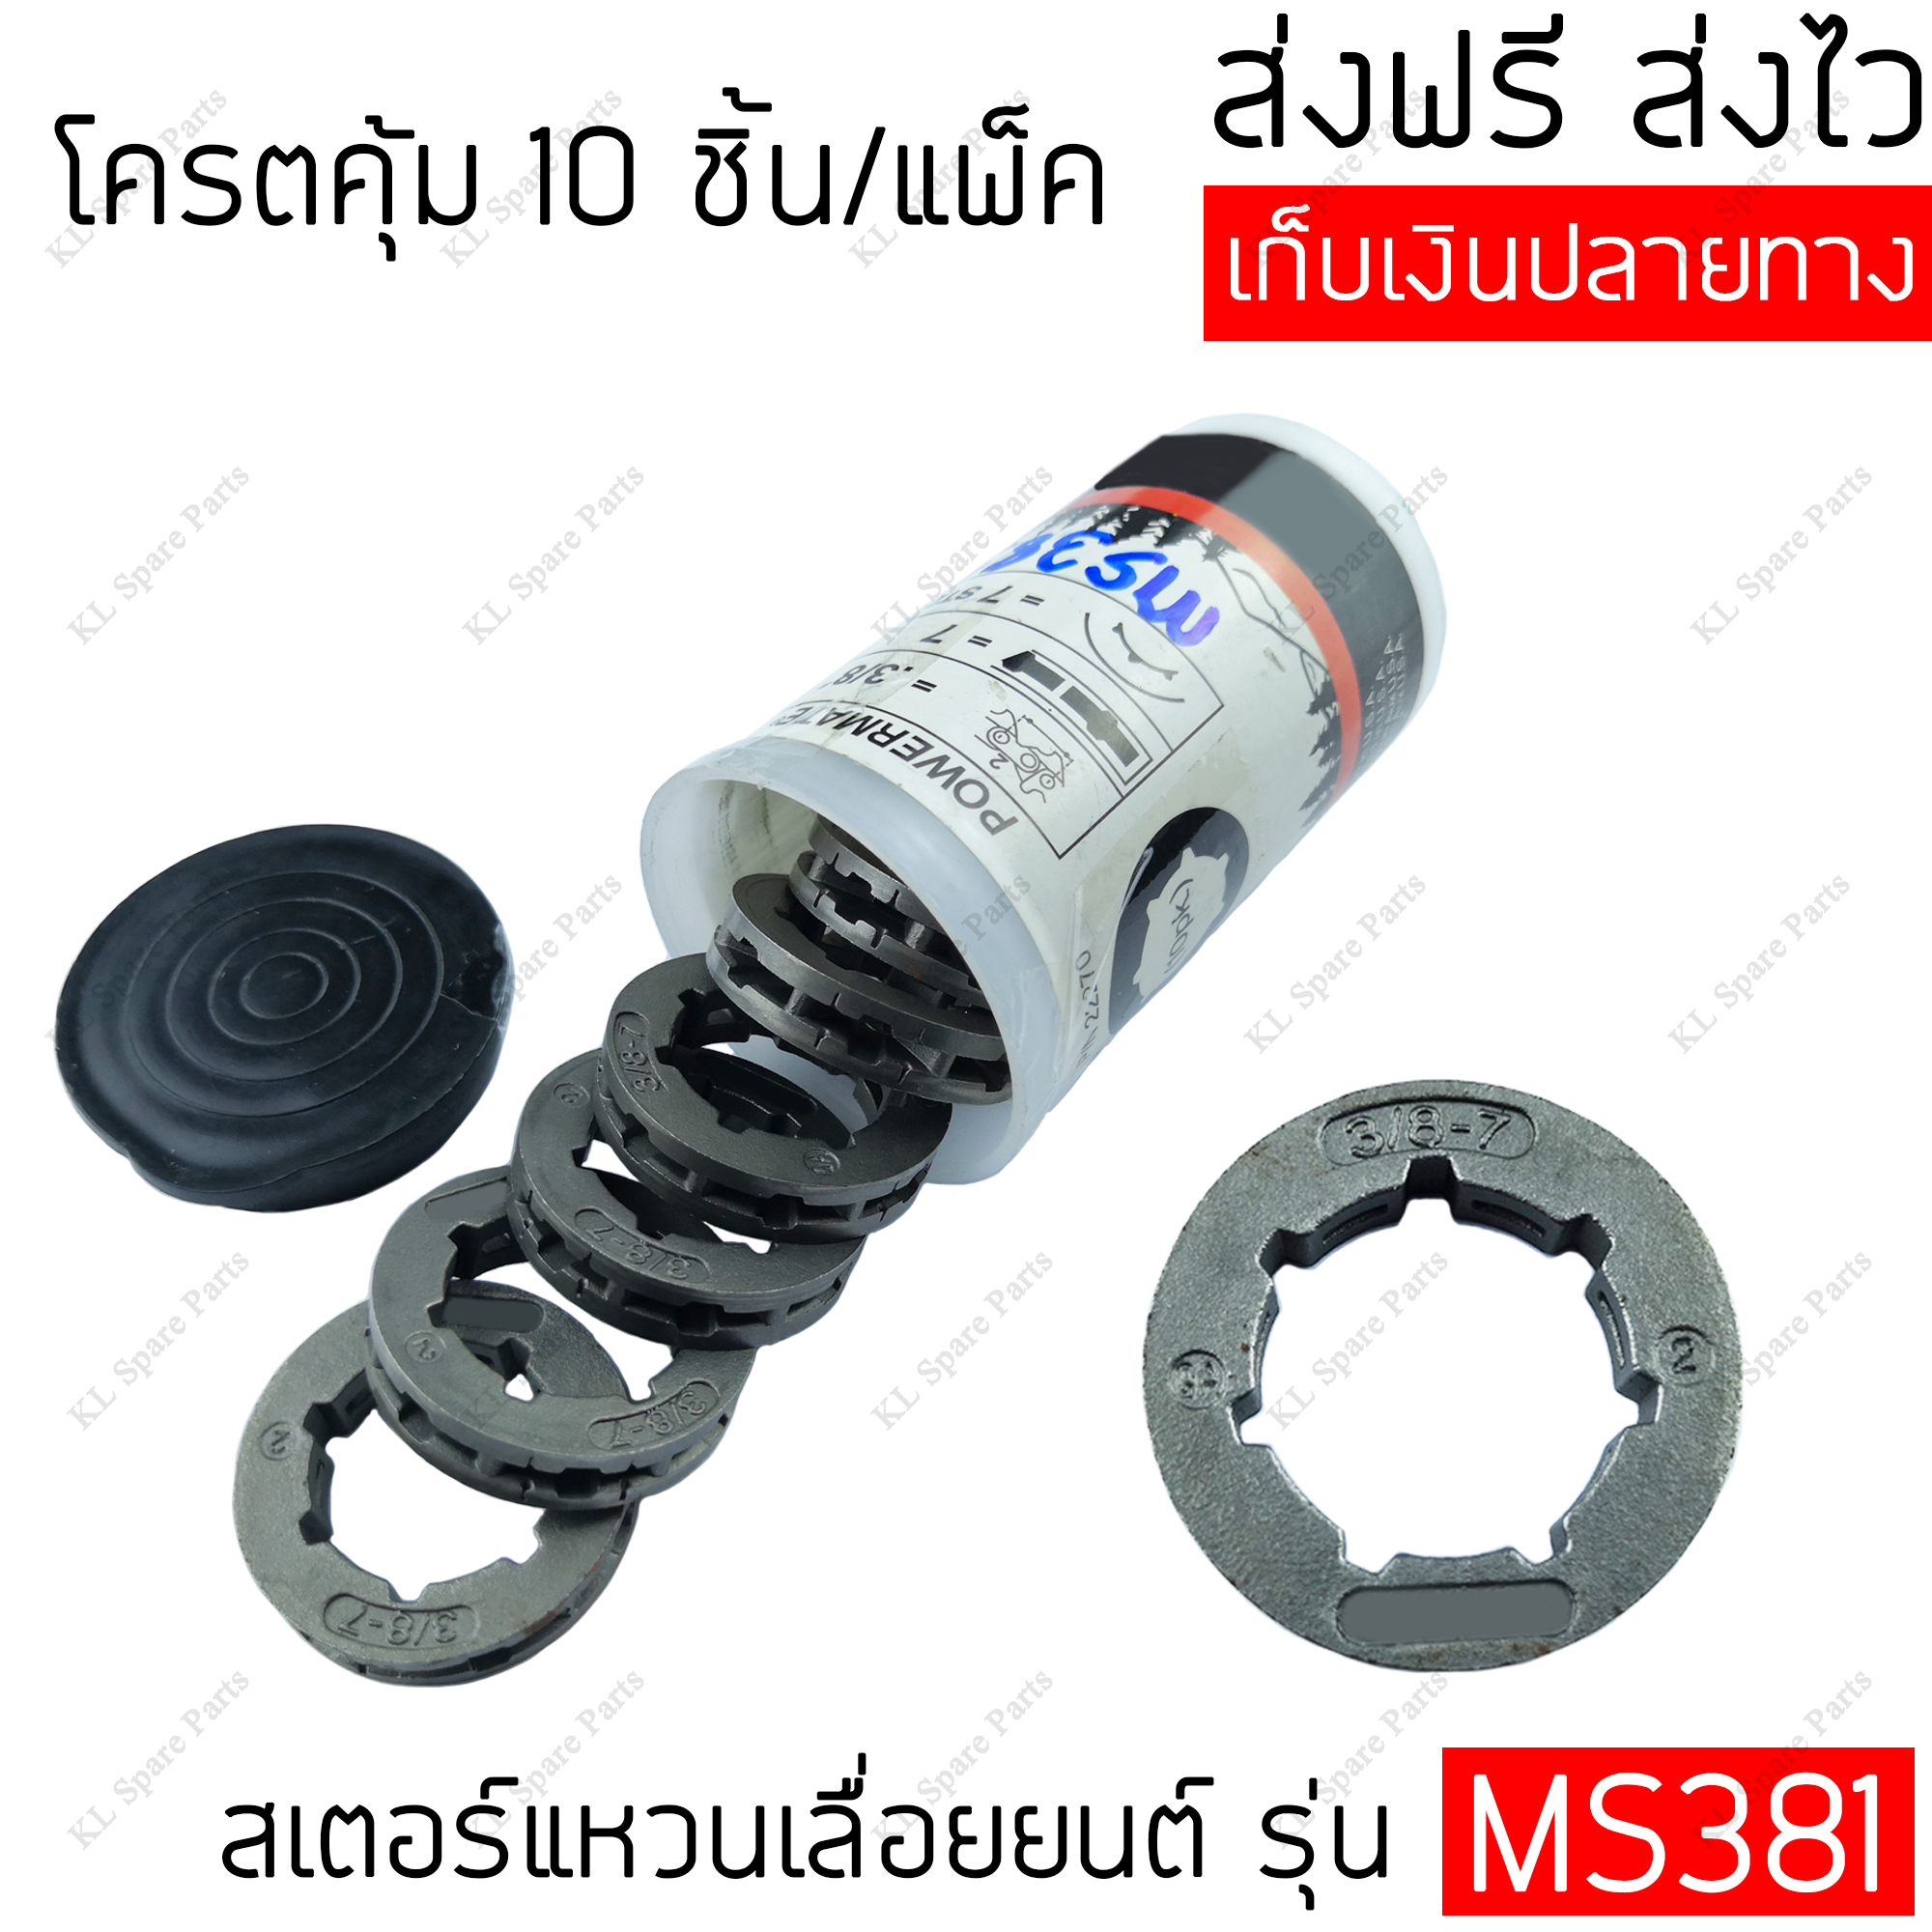 สเตอร์แหวนเลื่อยโซ่ยนต์ 3/8 10ชิ้น ใช้กับเลื่อยยนต์รุ่น MS381 สเตอร์แหวน 3/8-7